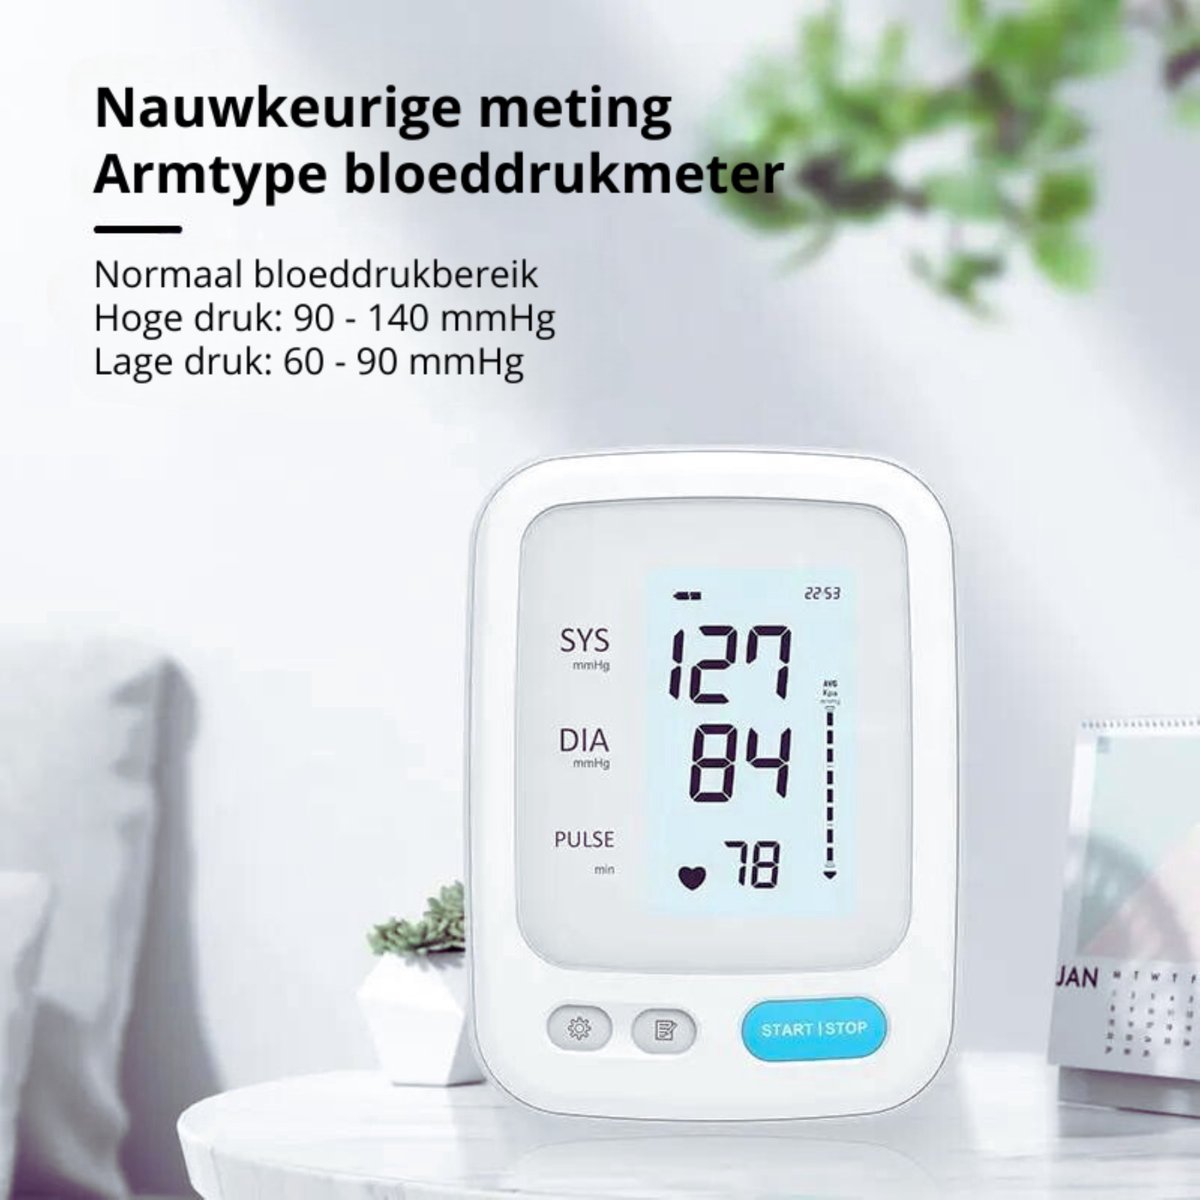 MedSync Bloeddrukmeter - Bloeddrukmeter Bovenarm - Hartslagmeter - 2 Gebruikers - Blood Pressure Monitor